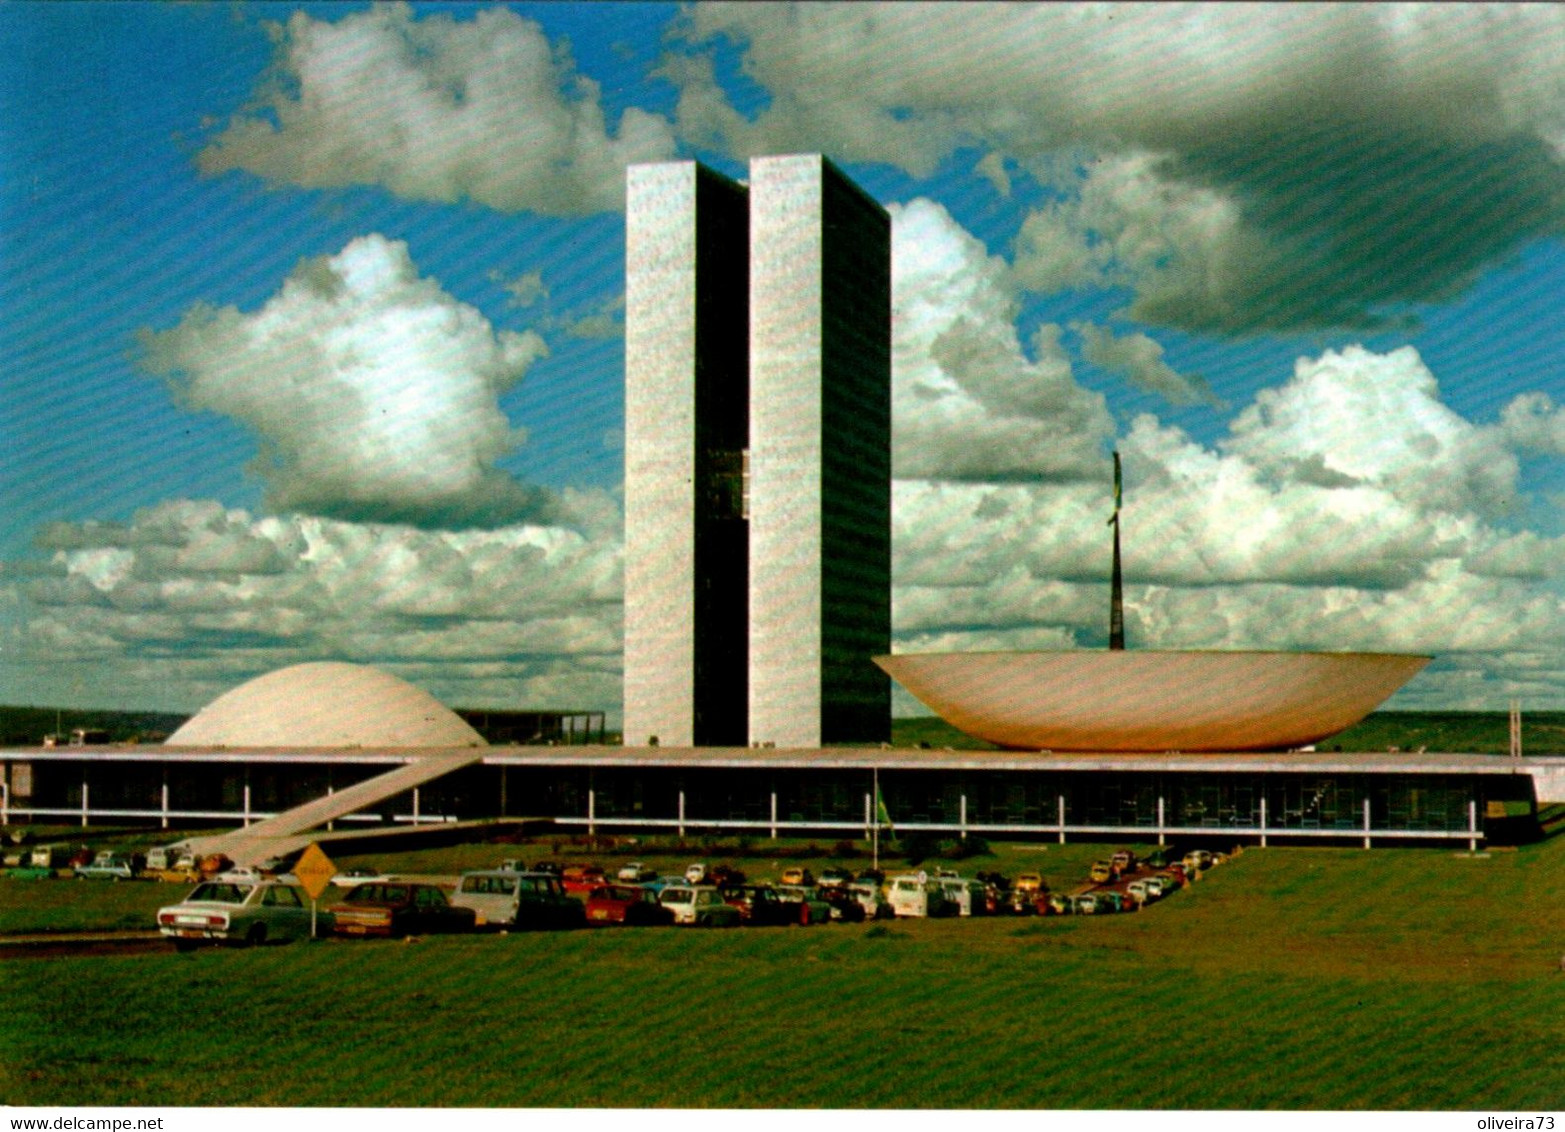 BRASIL - BRASILIA - Congresso Nacional - Brasilia